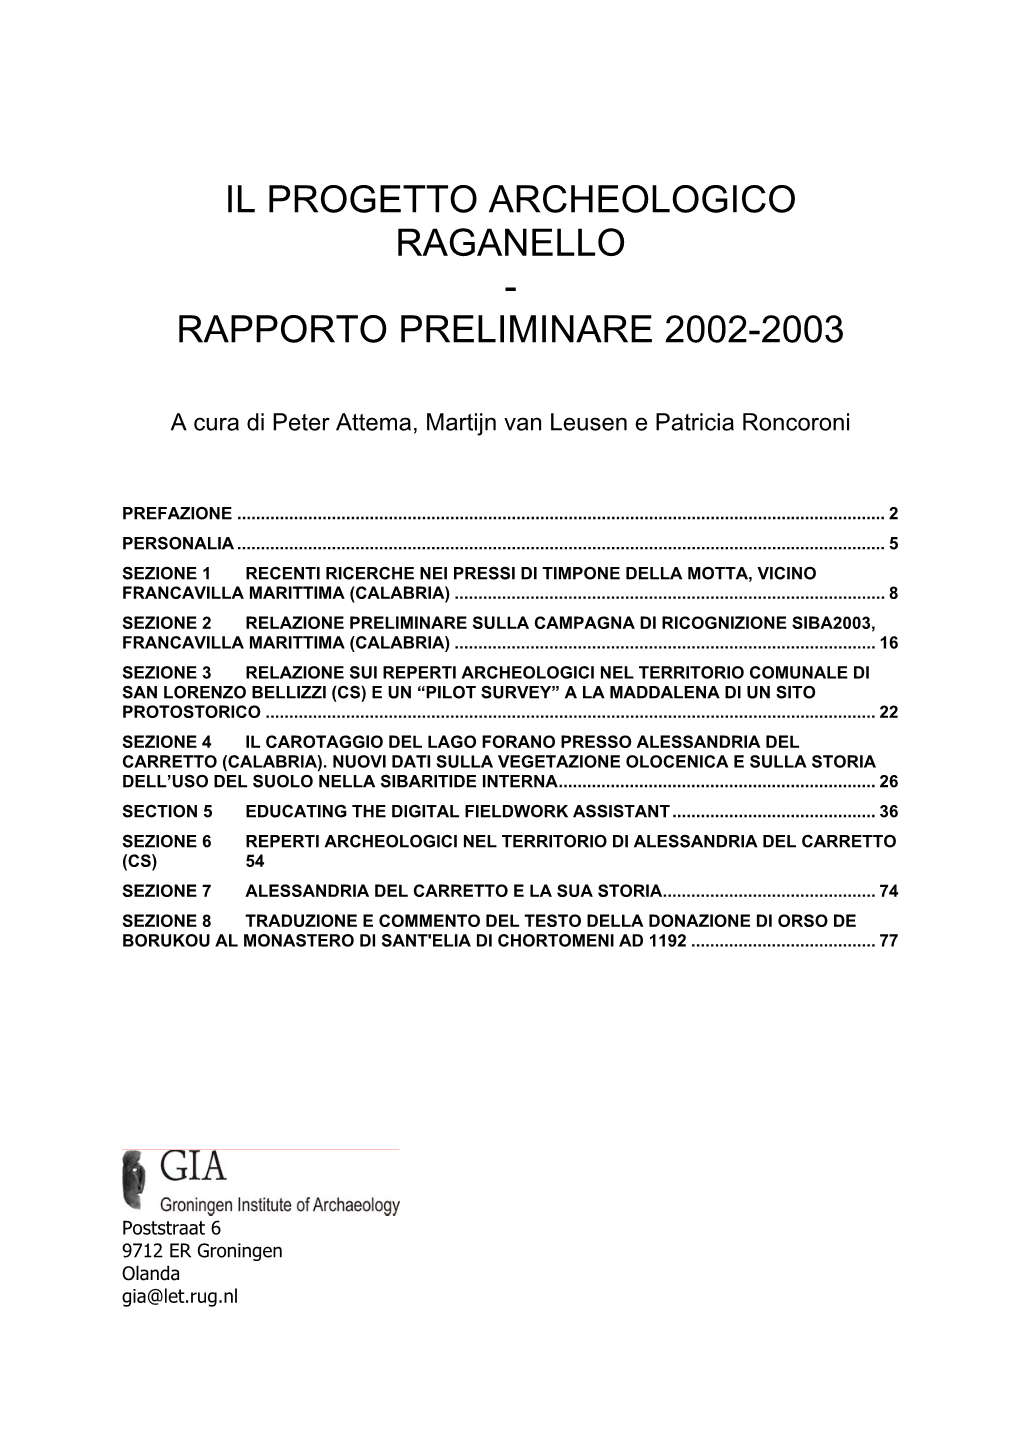 Il Progetto Archeologico Raganello - Rapporto Preliminare 2002-2003